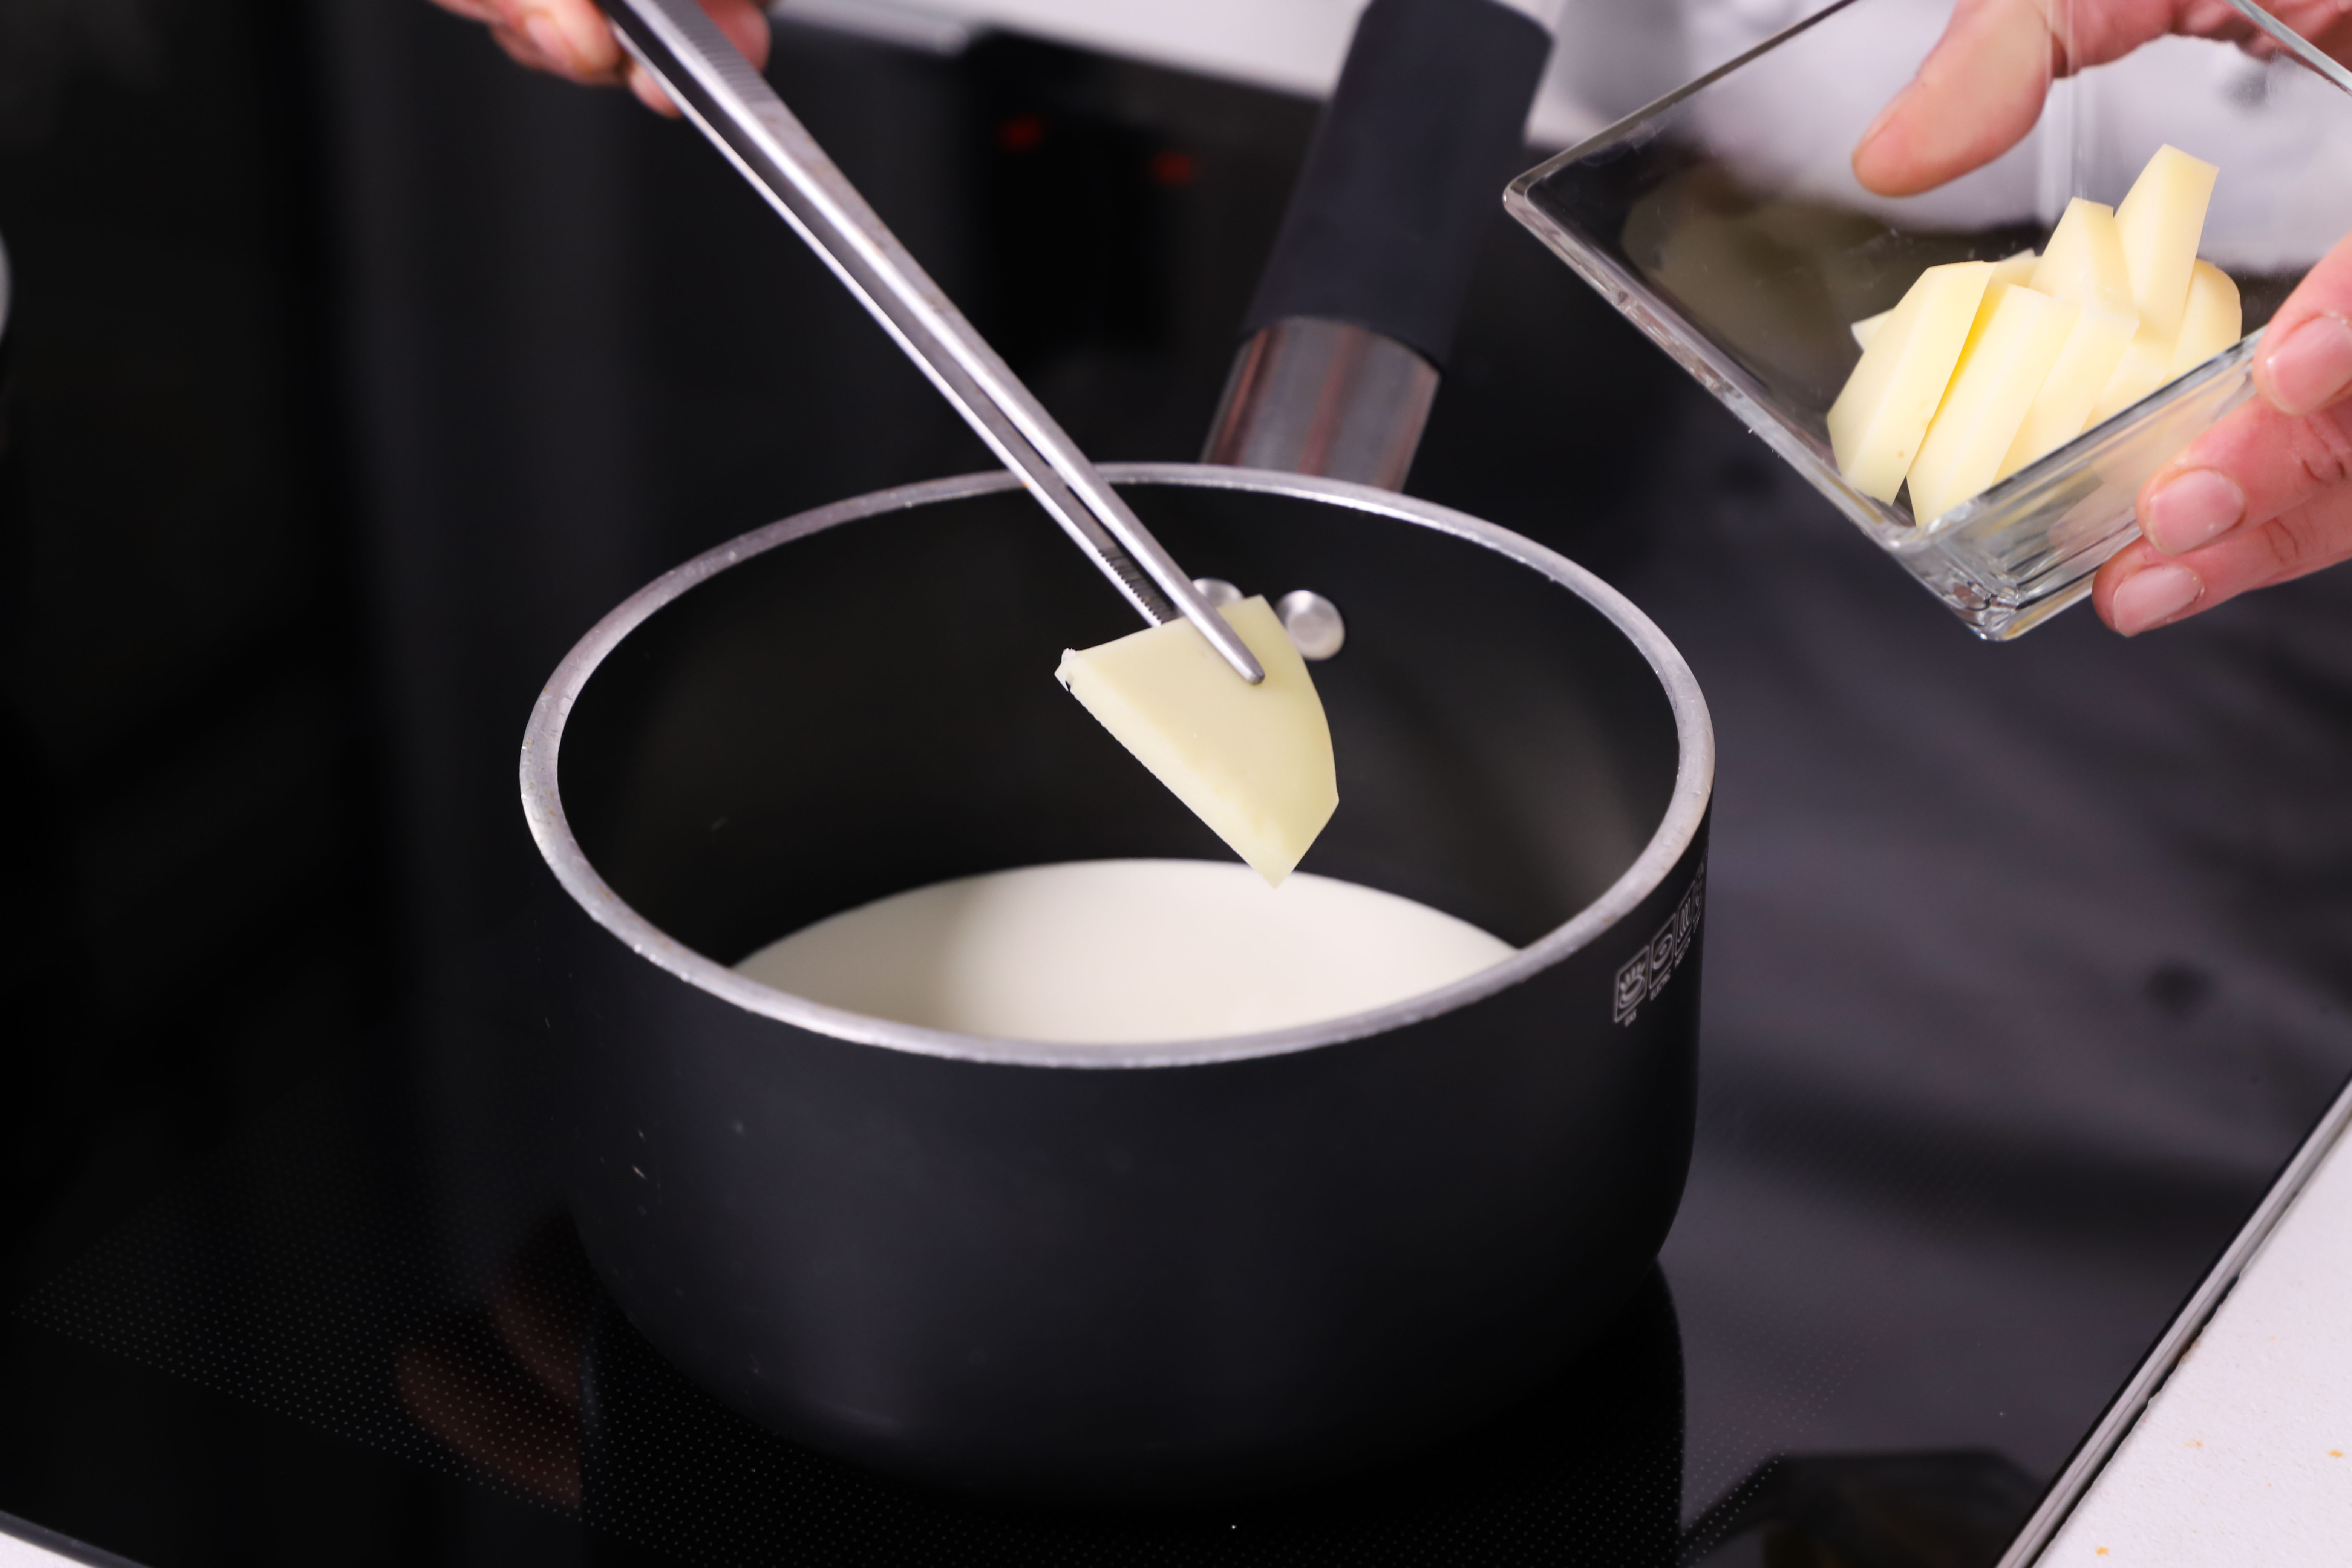 Crema di patate e salsa al tartufo | Ricette | Conad